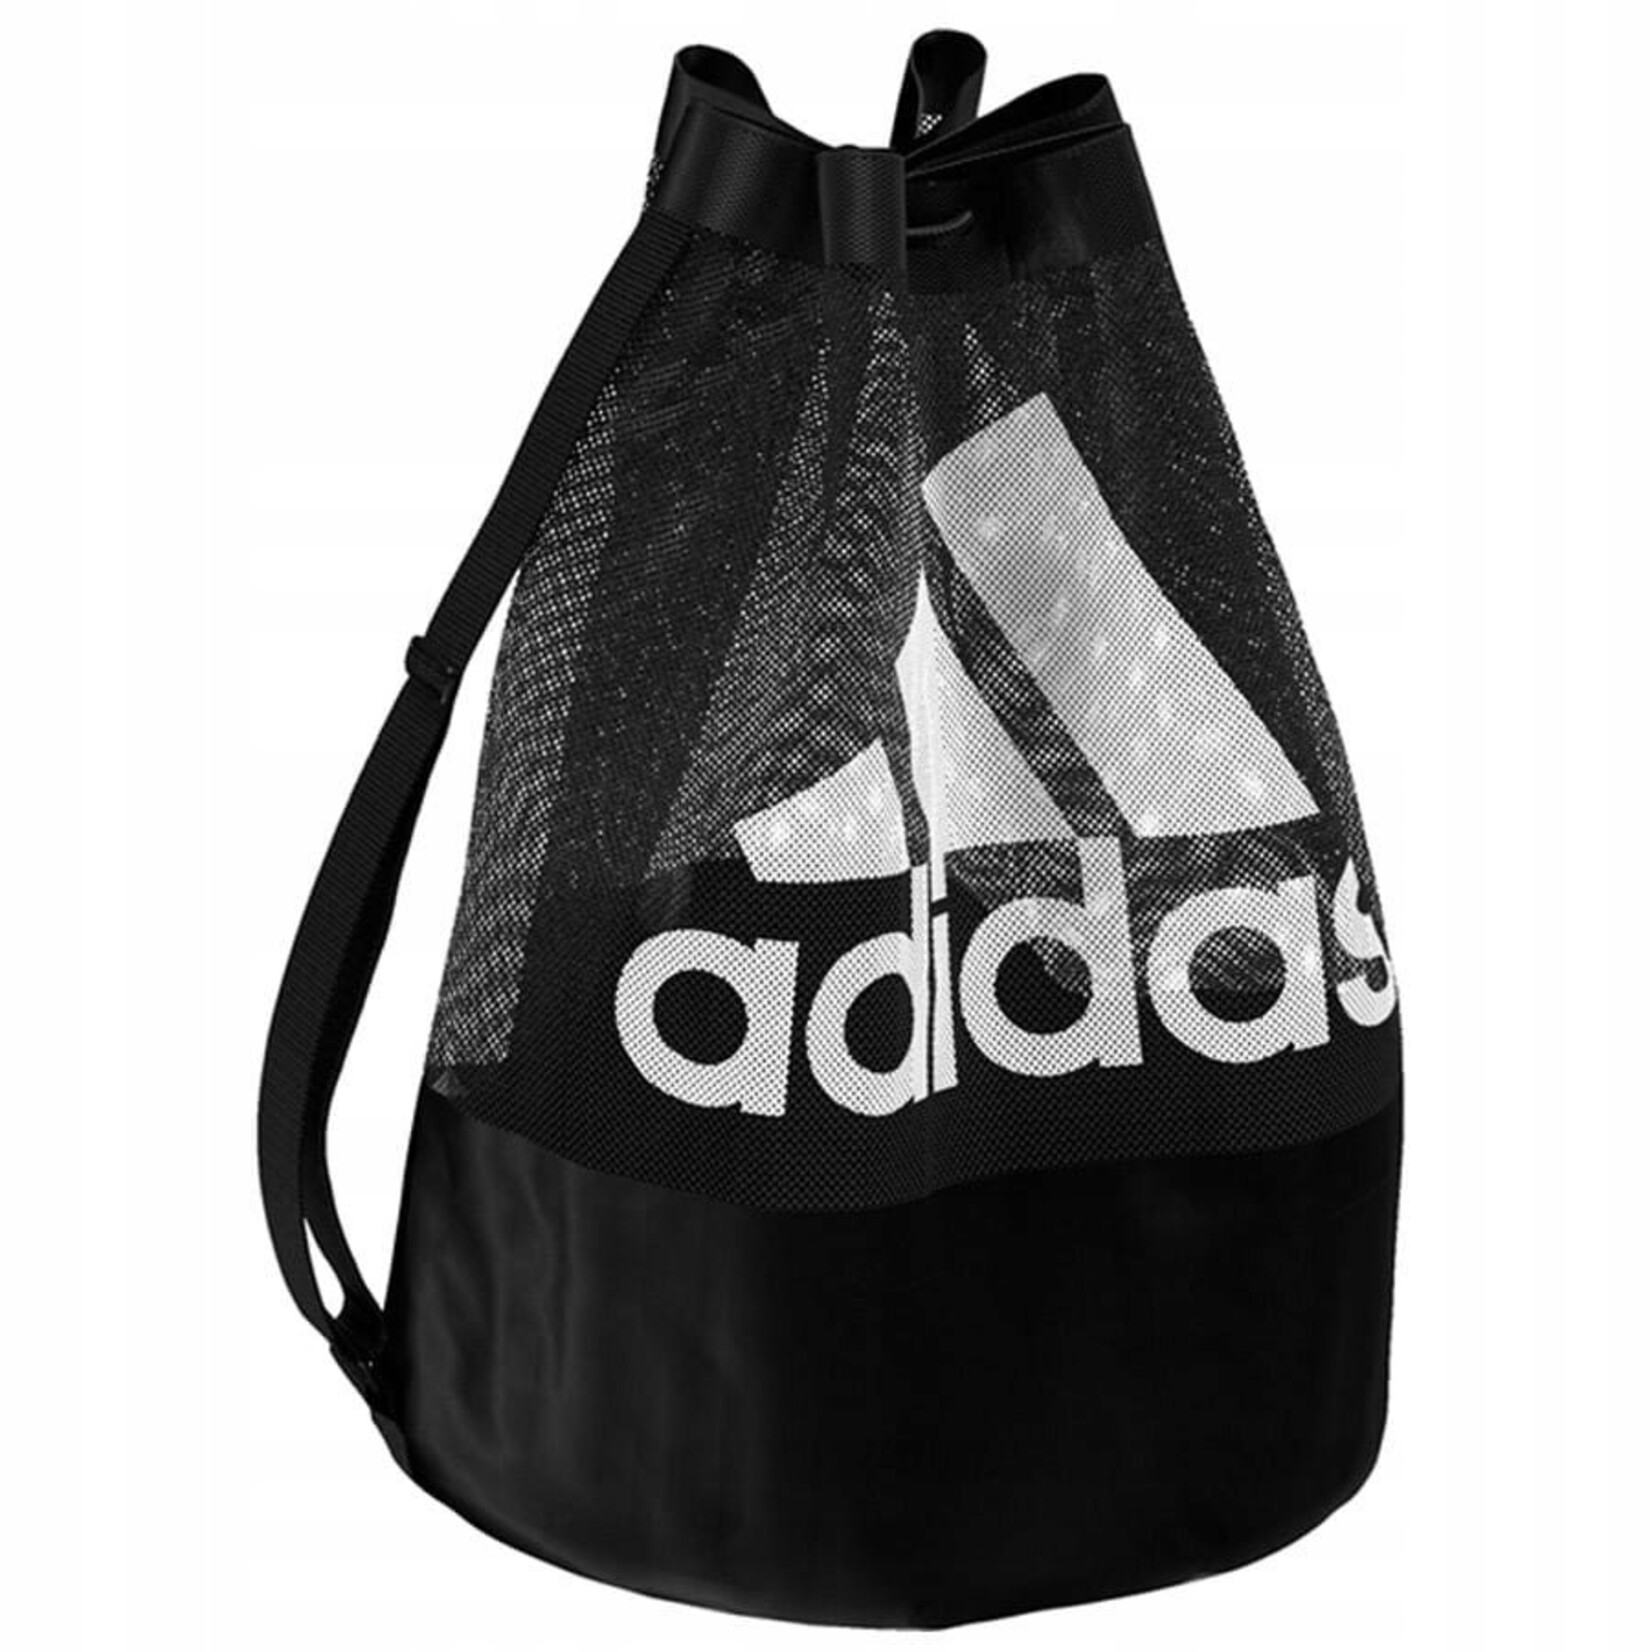 Adidas Adidas Soccer Ball Bag, Mesh